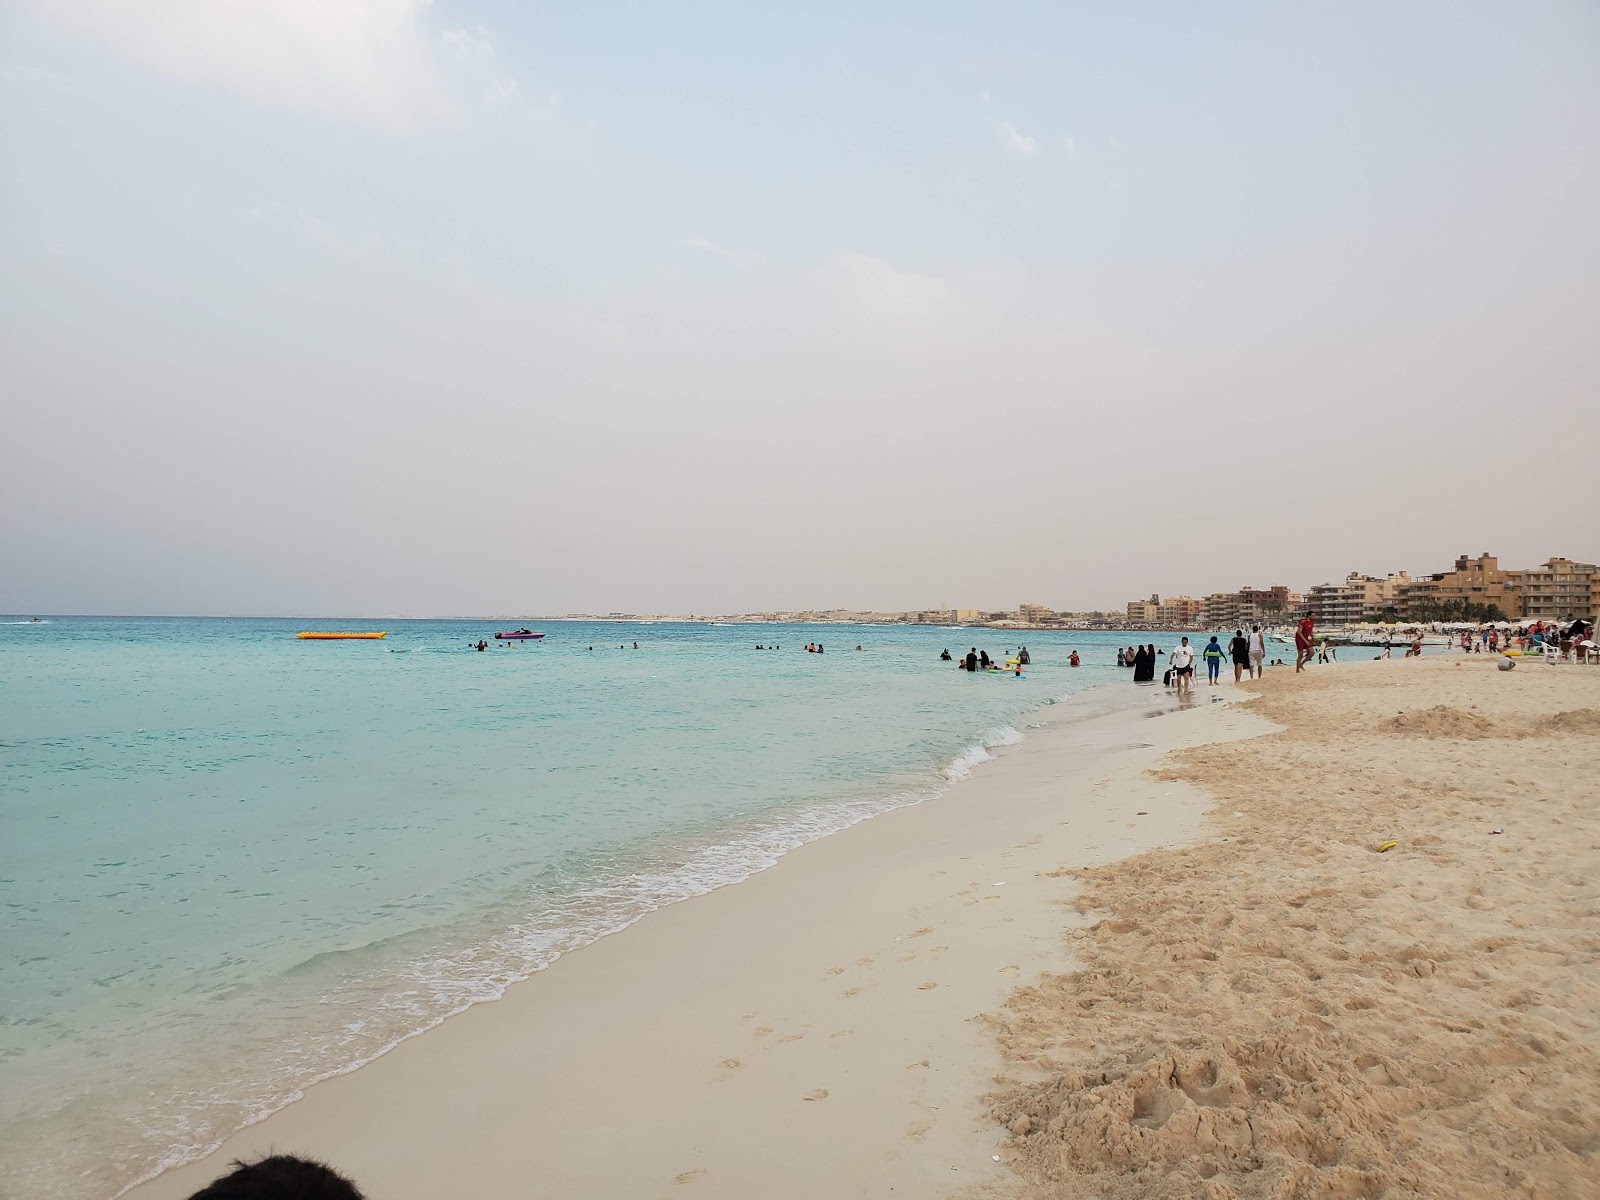 Obayed Matrouh Beach'in fotoğrafı ve yerleşim